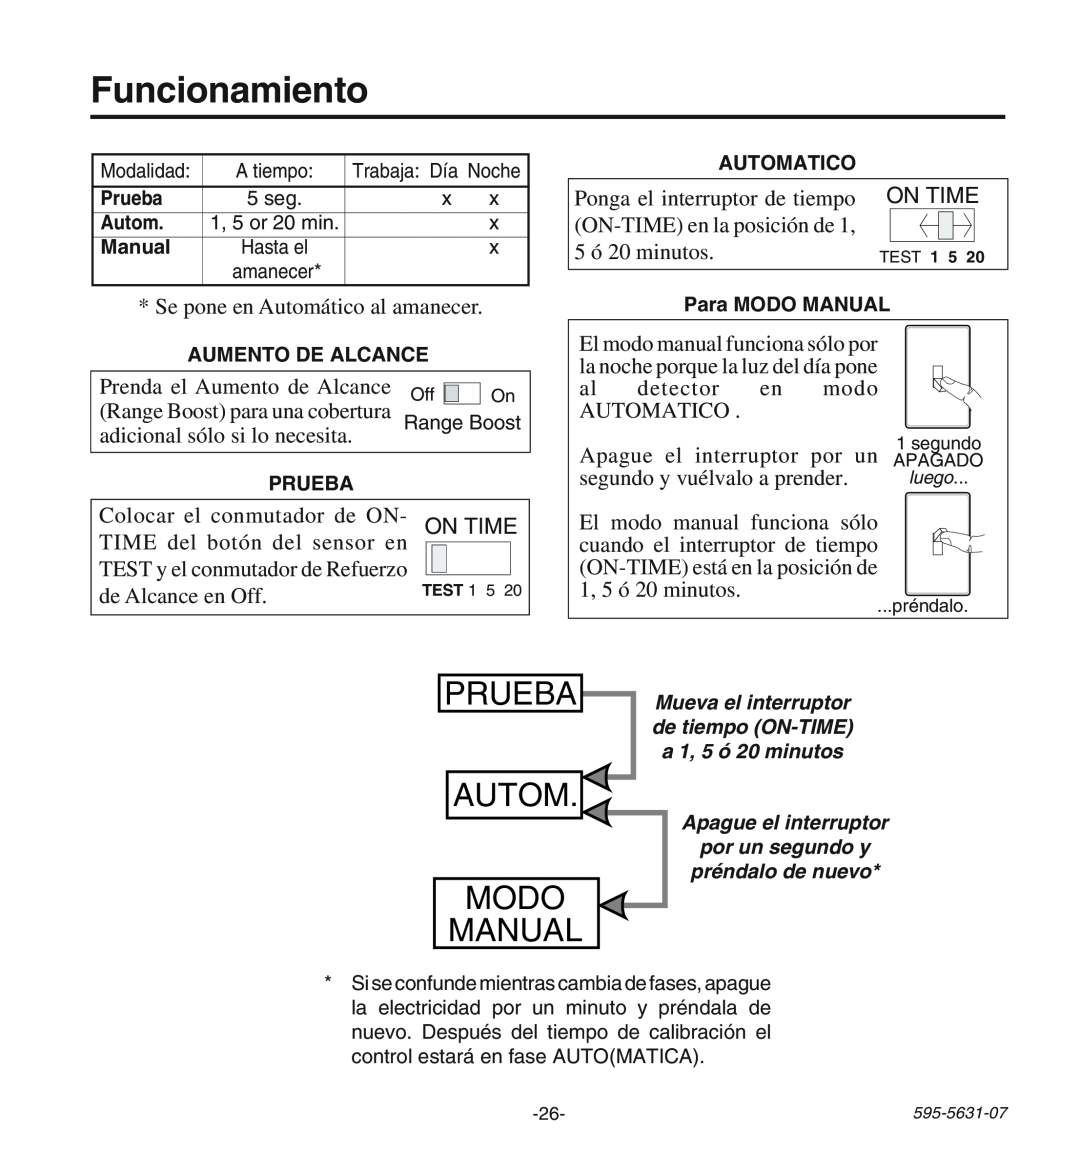 Desa HD-9240 manual Funcionamiento, Prueba, Autom Modo Manual 